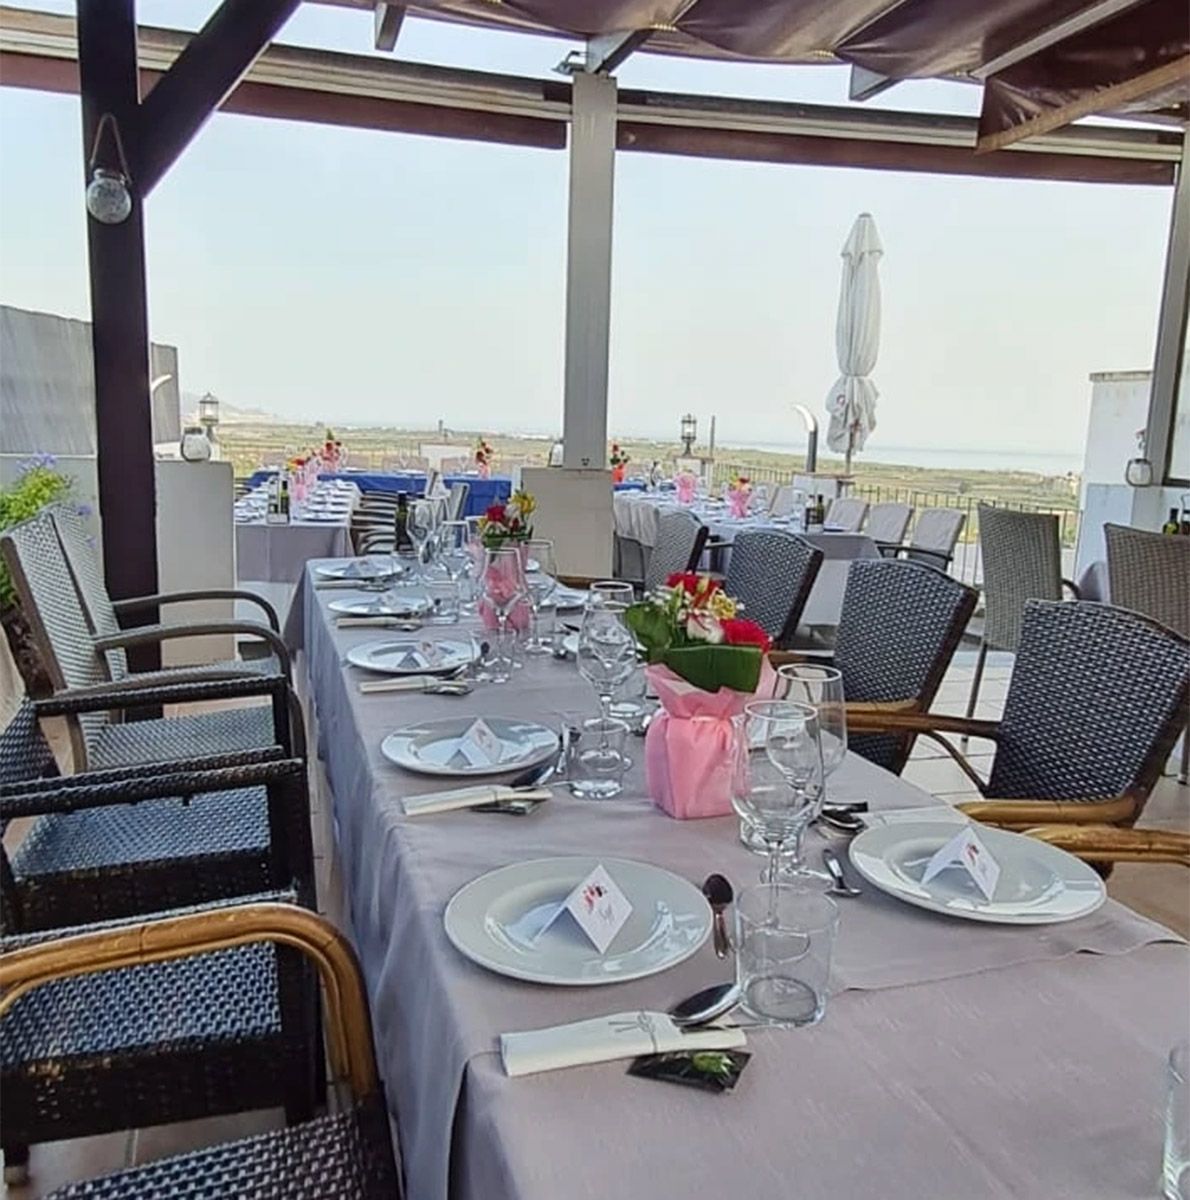 Foto 1 de Cocina casera mediterránea en  | Restaurante La Botica